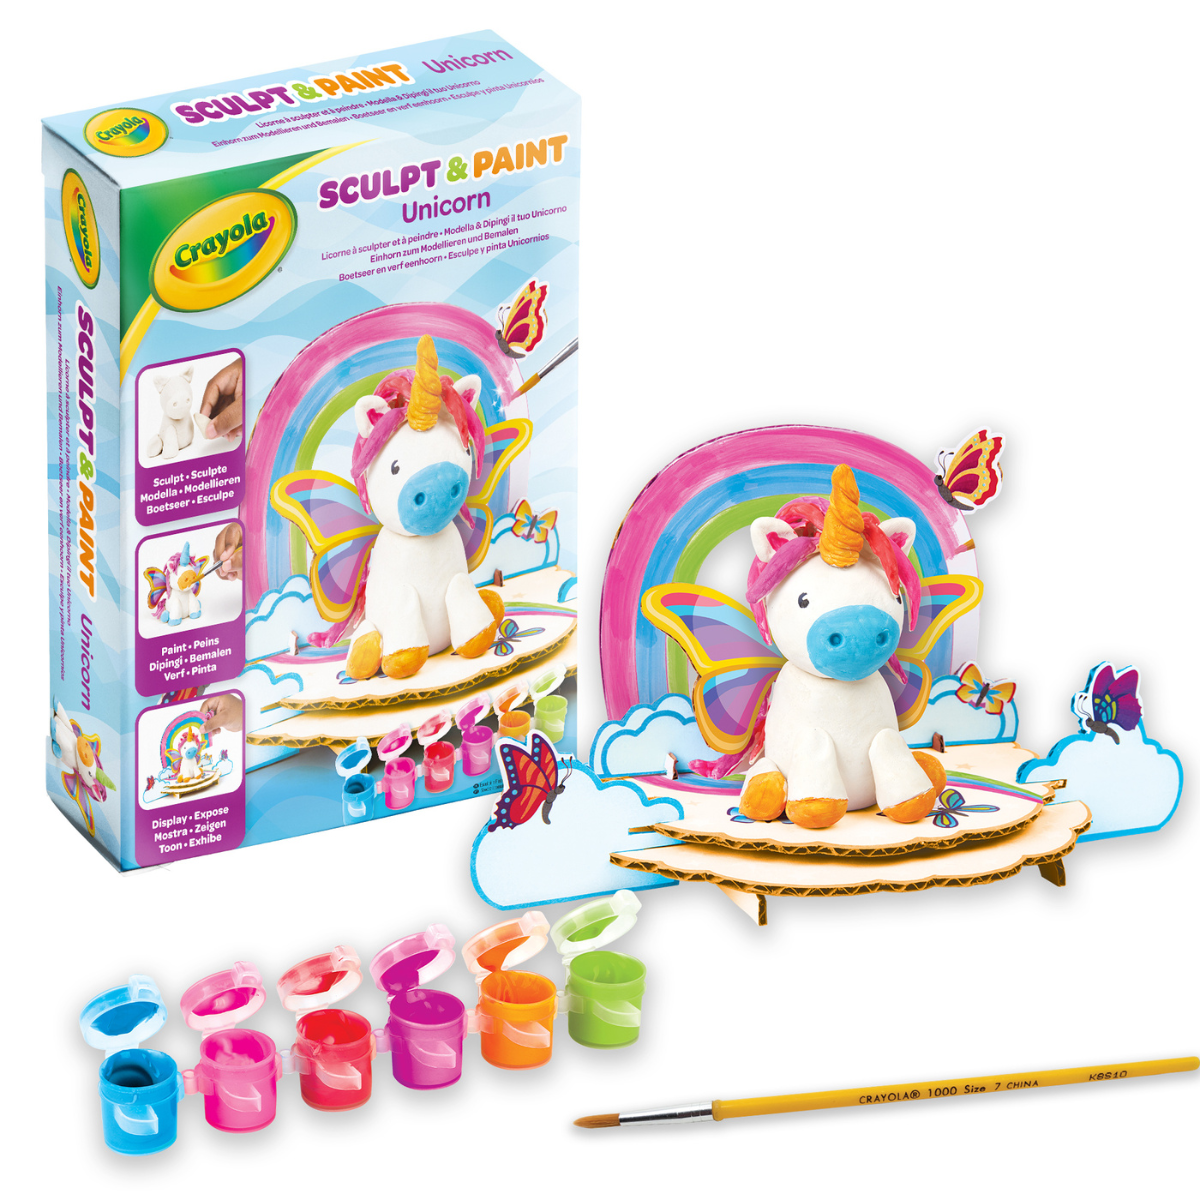 Crayola - modella & dipingi il tuo unicorno, argilla modellabile autoindurente, con tempere e accessori per decorare, attività creativa e regalo per bambini e bambine, da 5 anni - CRAYOLA